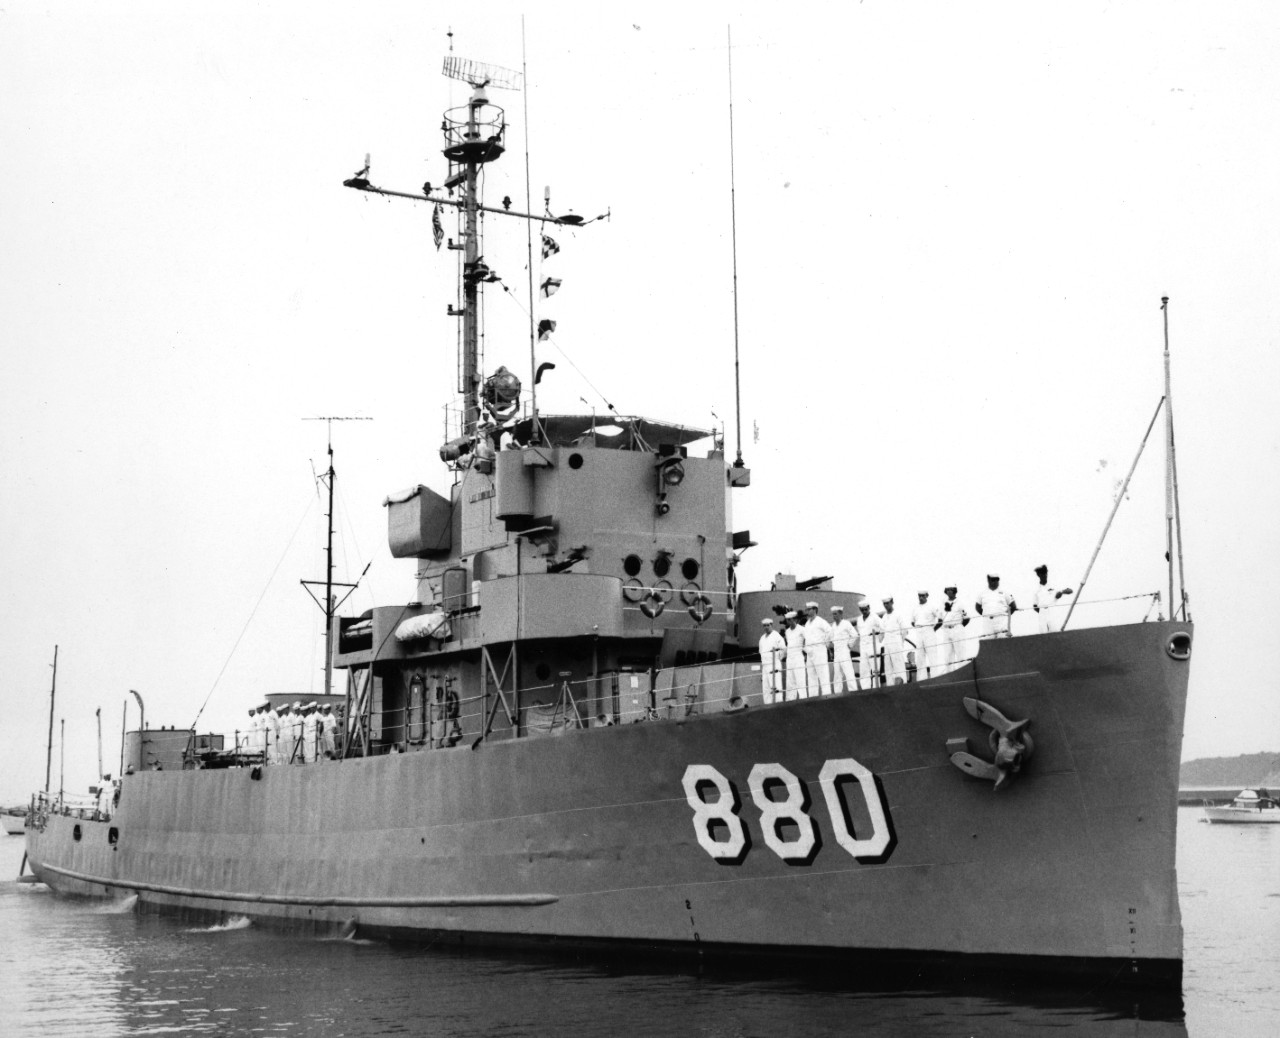 USS Ely (PCE-880) at Sheboygan, Wisconsin